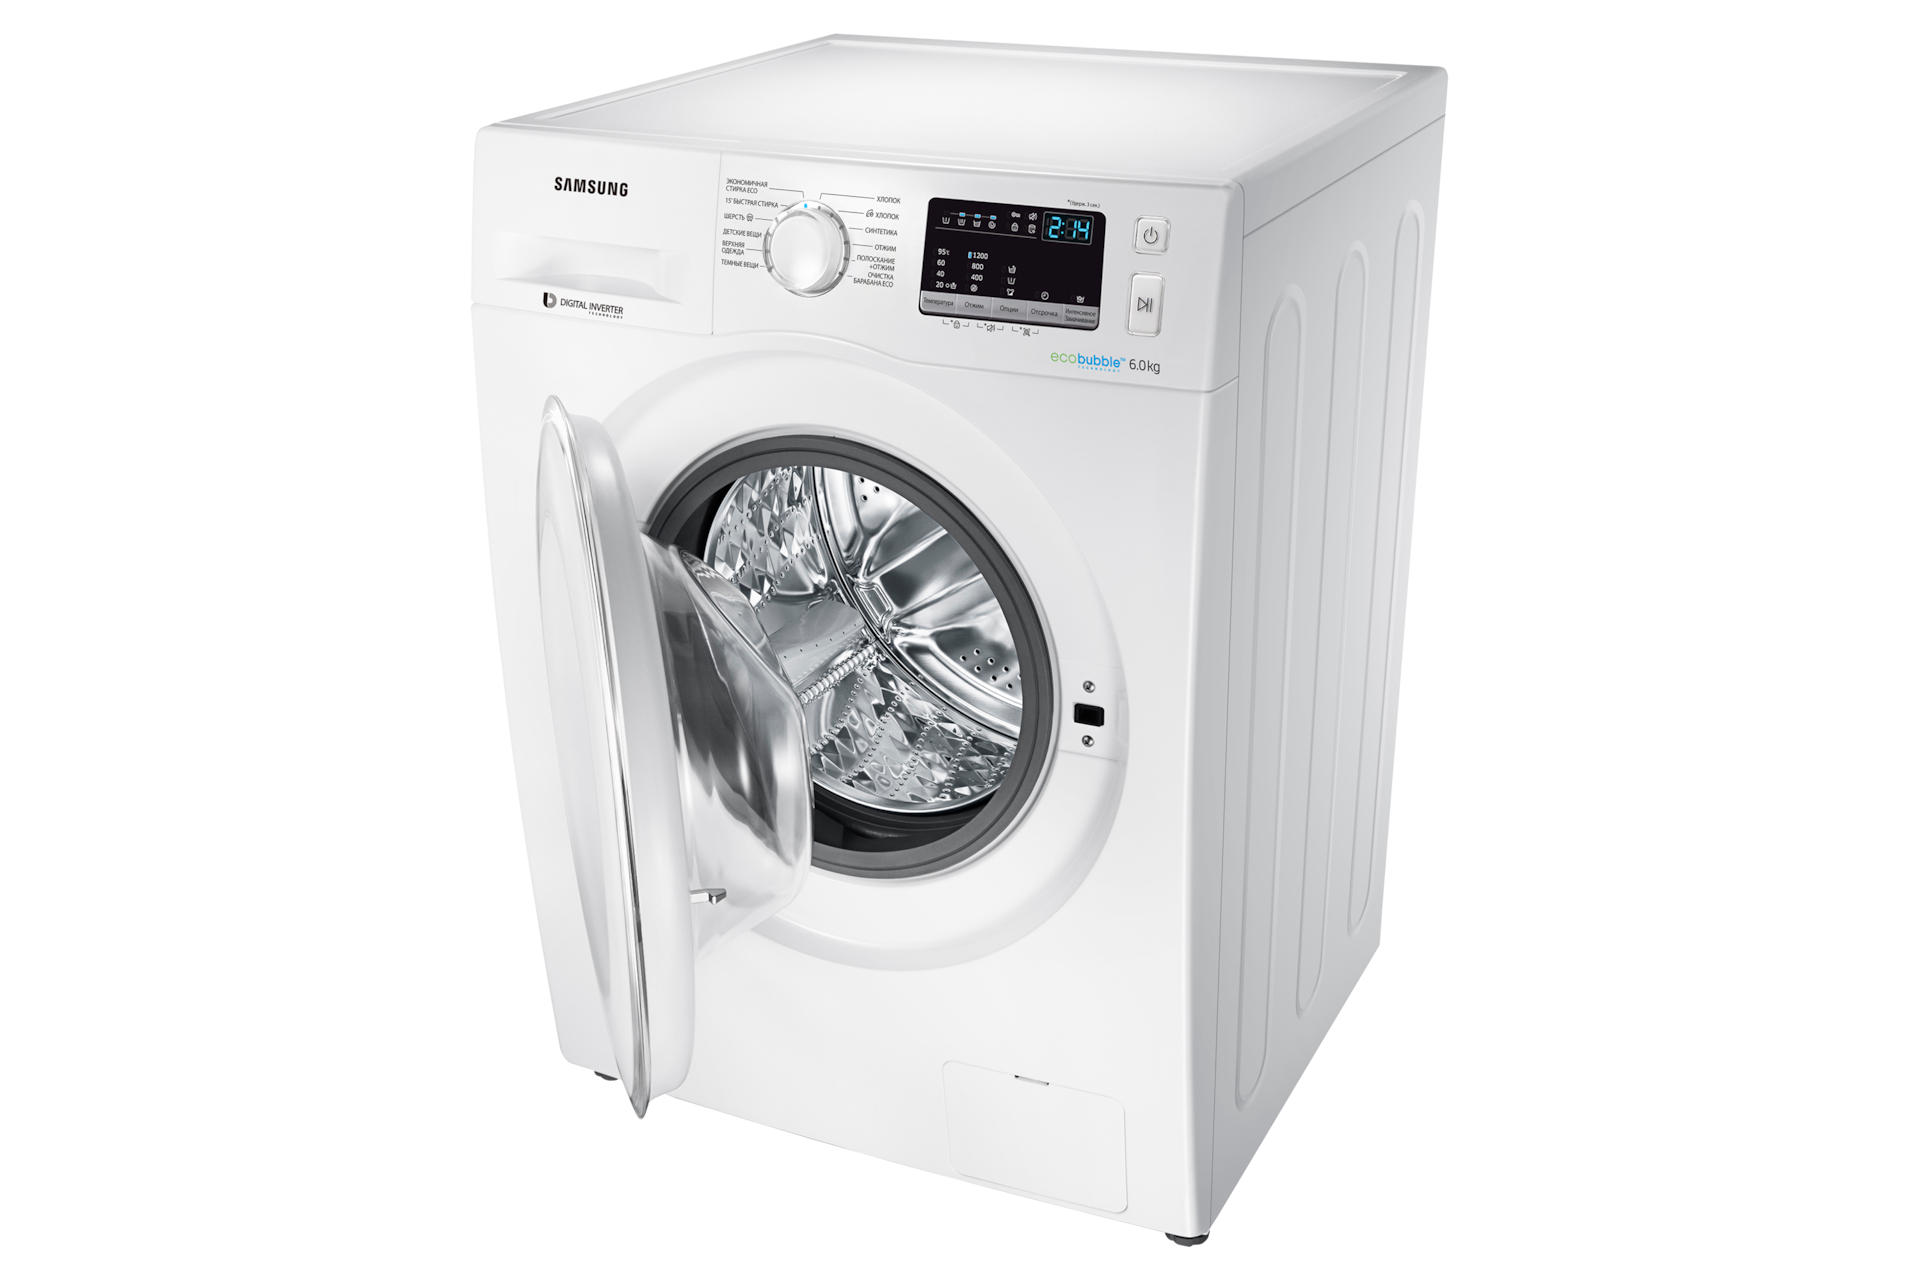 Характеристики стиральной машины samsung